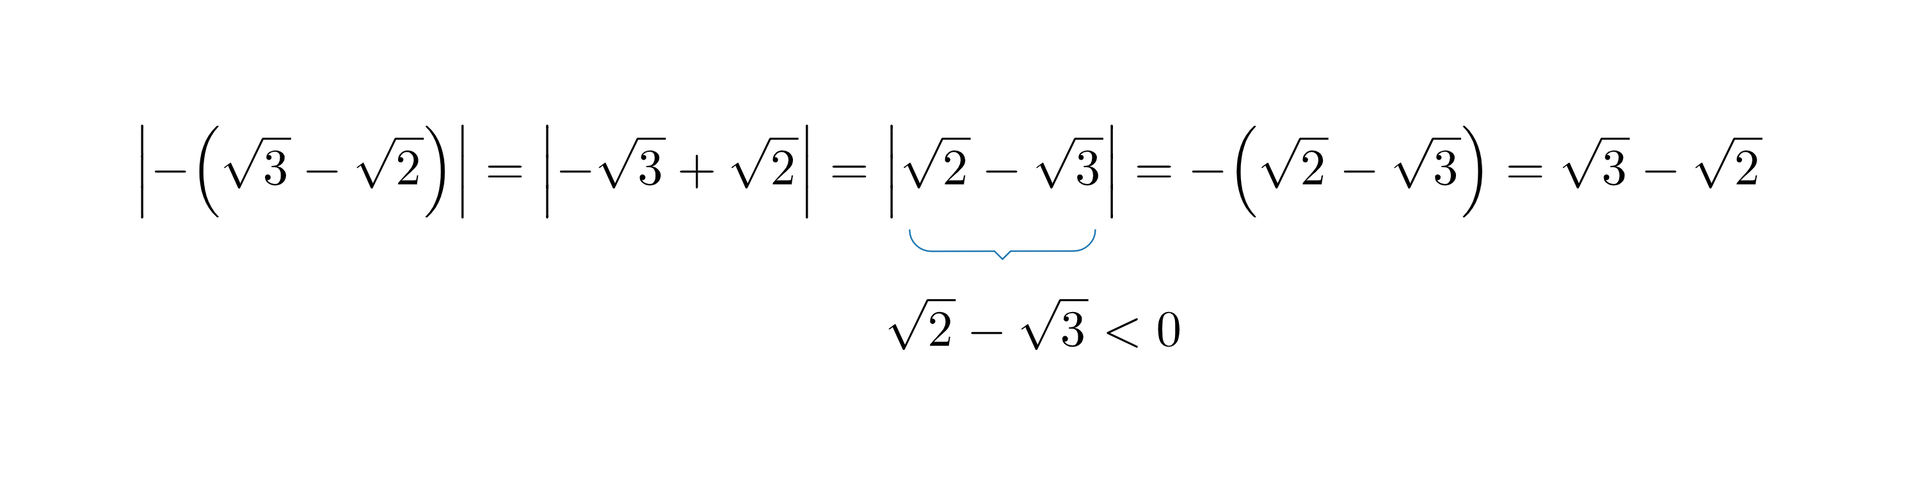 Na ilustracji przedstawione jest równanie rozwiązane pierwszym sposobem. -3-2=-3+2=2-3=, przy czym pod ostatnim modułem dodano, że 2-3&gt;0, więc dalej po znaku równości zapisano: =-2-3=3-2